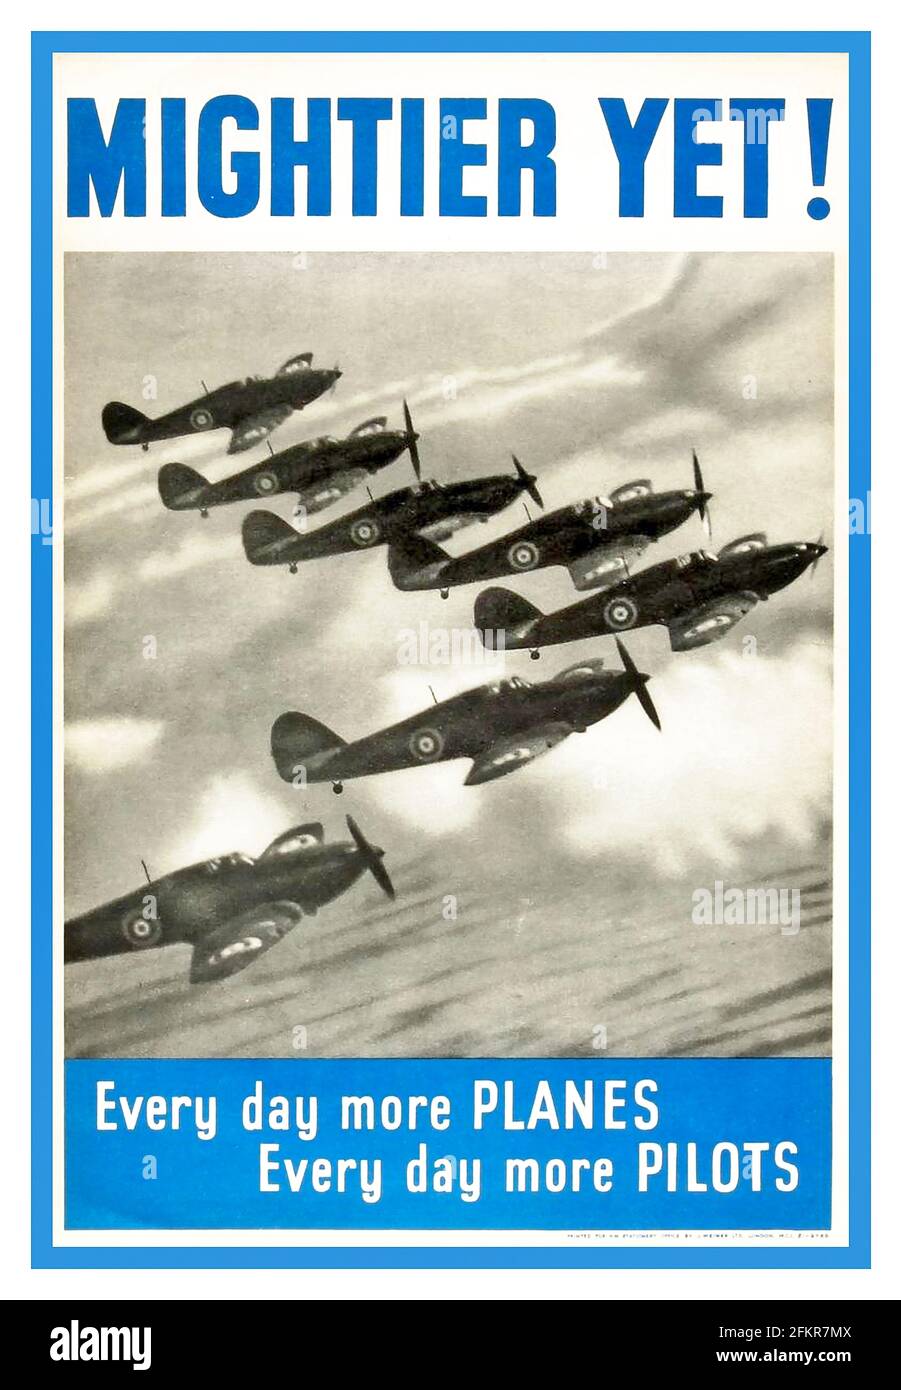 Vintage “MIGHTIER YET” UK SPITFIRE FORMATION RAF POSTER de la RAF des années 1940 WW2 RAF britannique RAF propagande recrutement affiche 'Mightier yet !' (Titre du « PAYS DE L'ESPOIR ET DE LA GLOIRE d'Elgar » « chaque jour plus D'AVIONS » « chaque jour plus DE PILOTES », l'escadron de Spitfire était en formation. La bataille d'Angleterre de la Seconde Guerre mondiale 1940 plus puissante encore ! Chaque jour, plus d'avions. Chaque jour, plus de pilotes. Banque D'Images